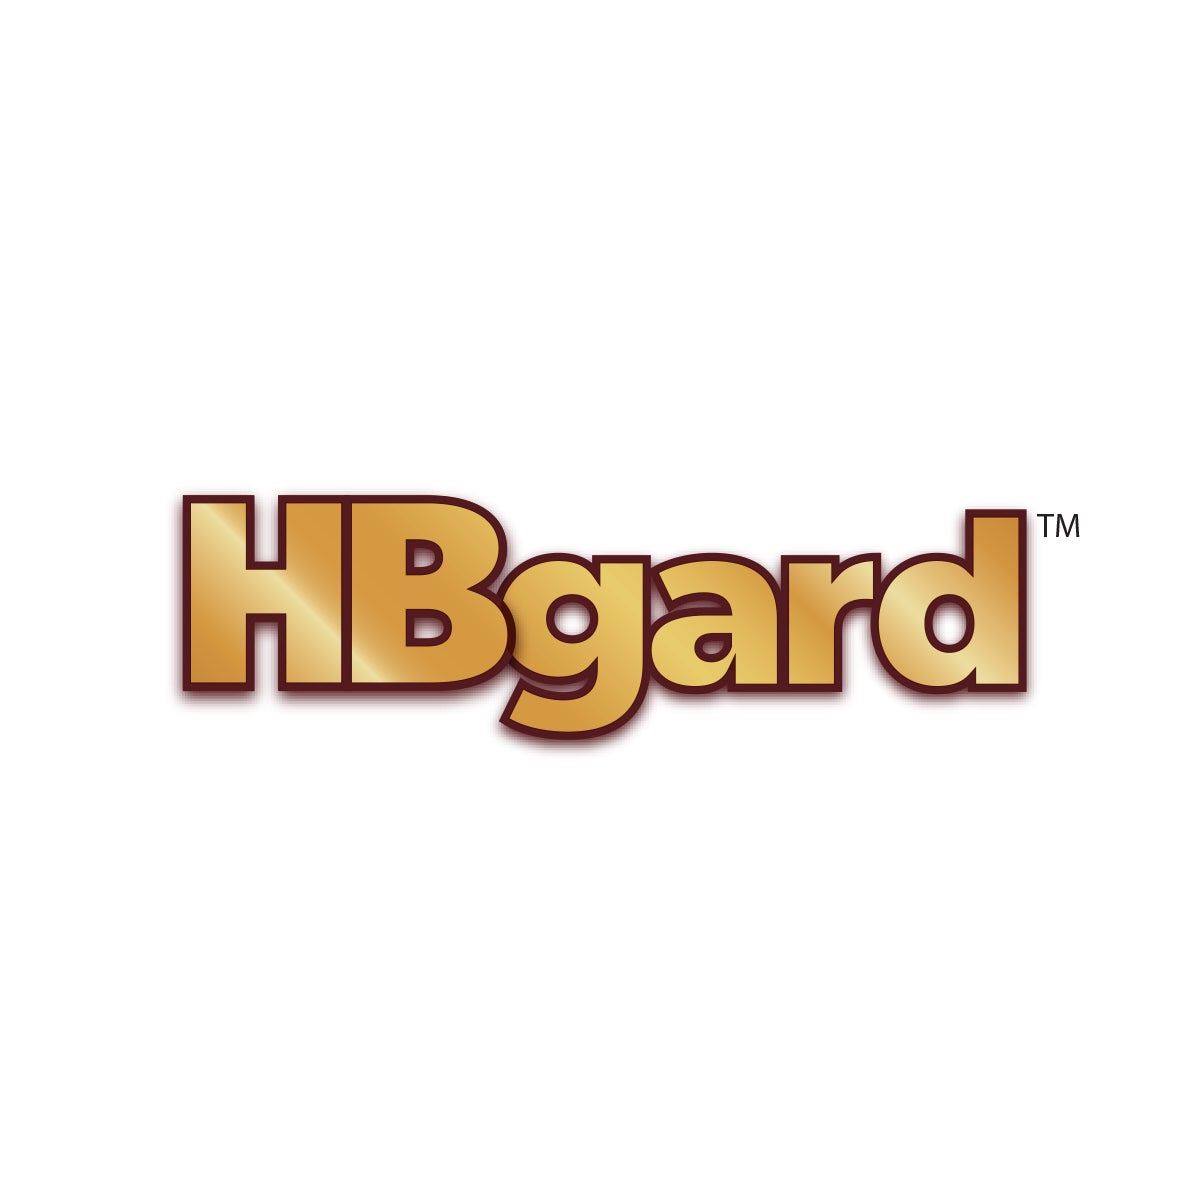 NHSc_Logos_HBGard